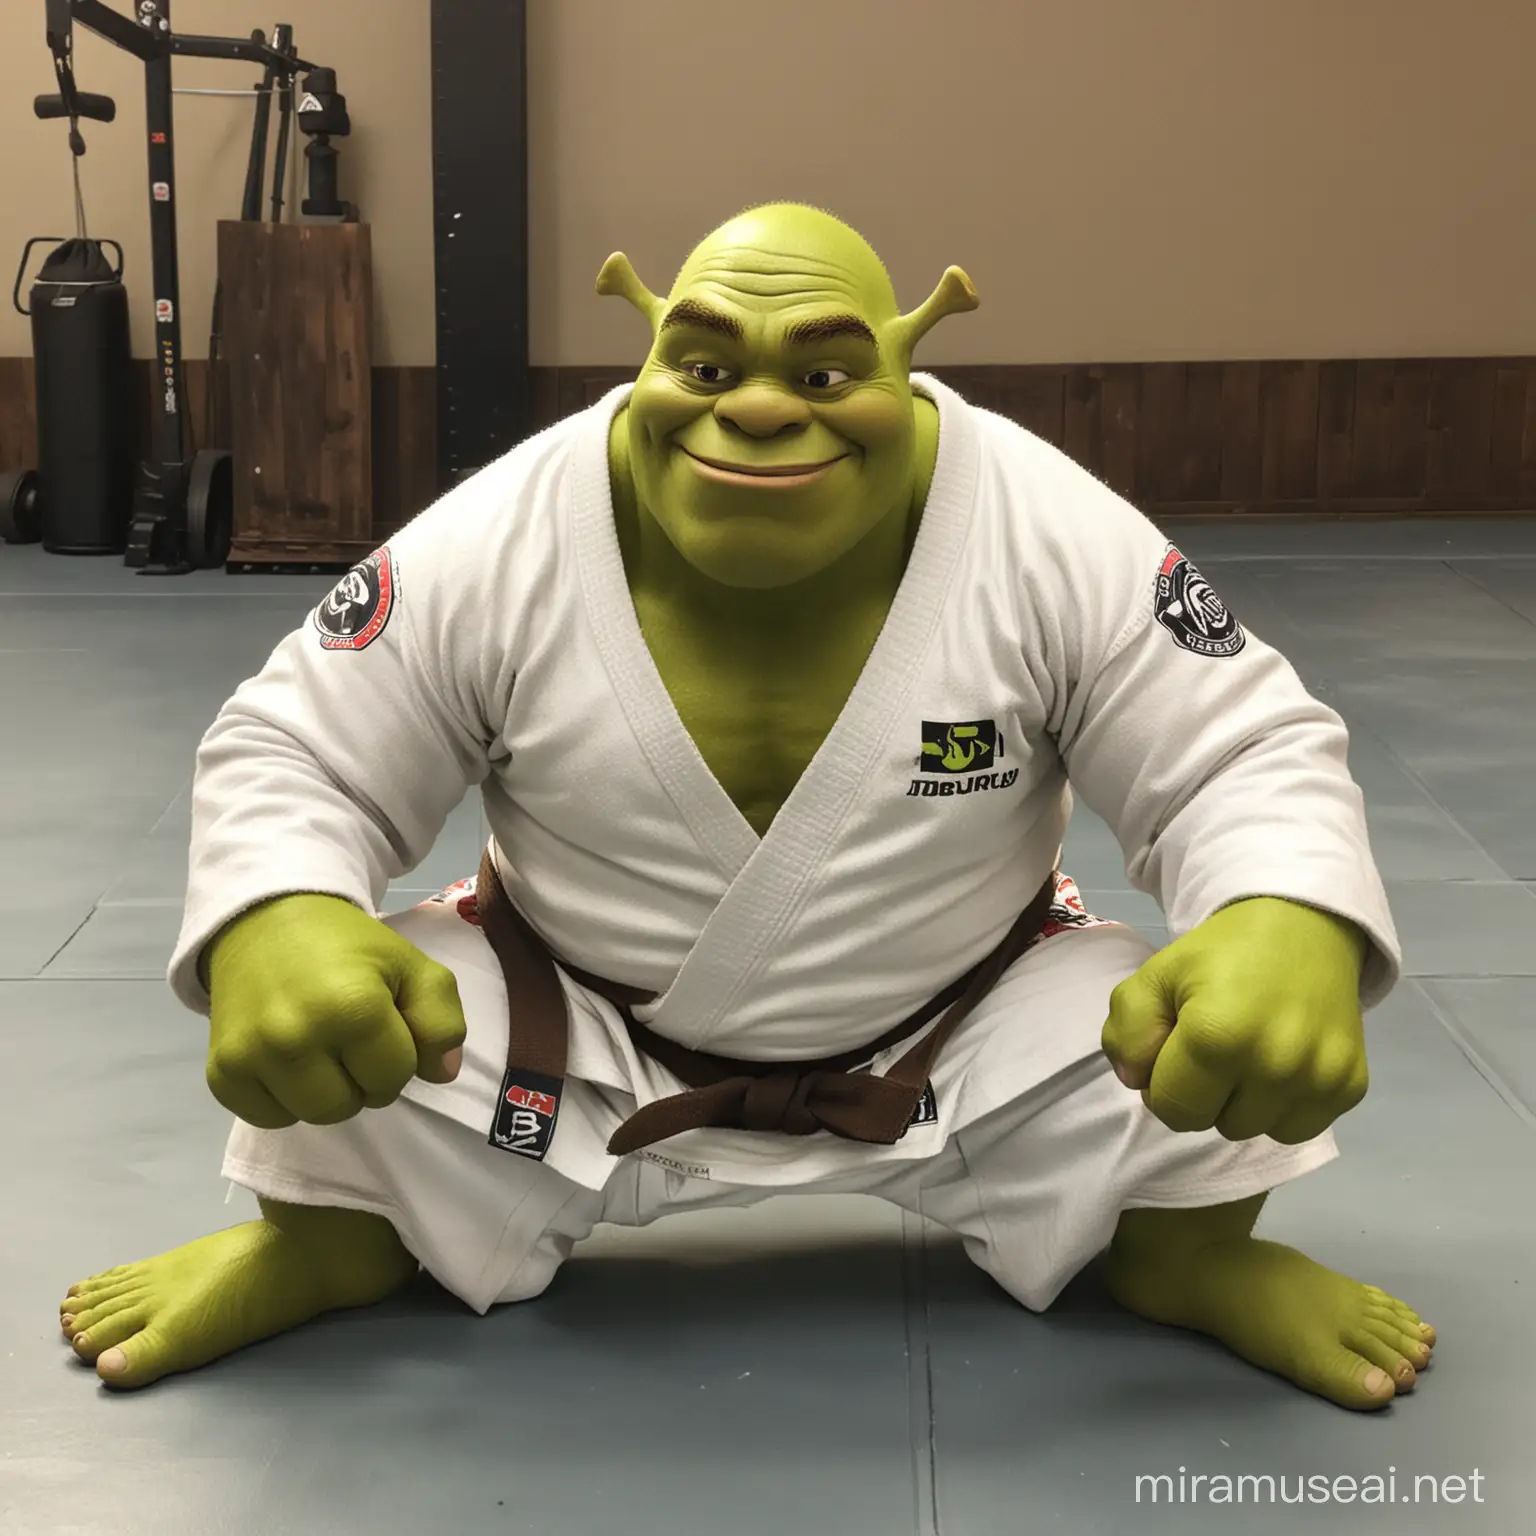 Shrek doing jiu jitsu